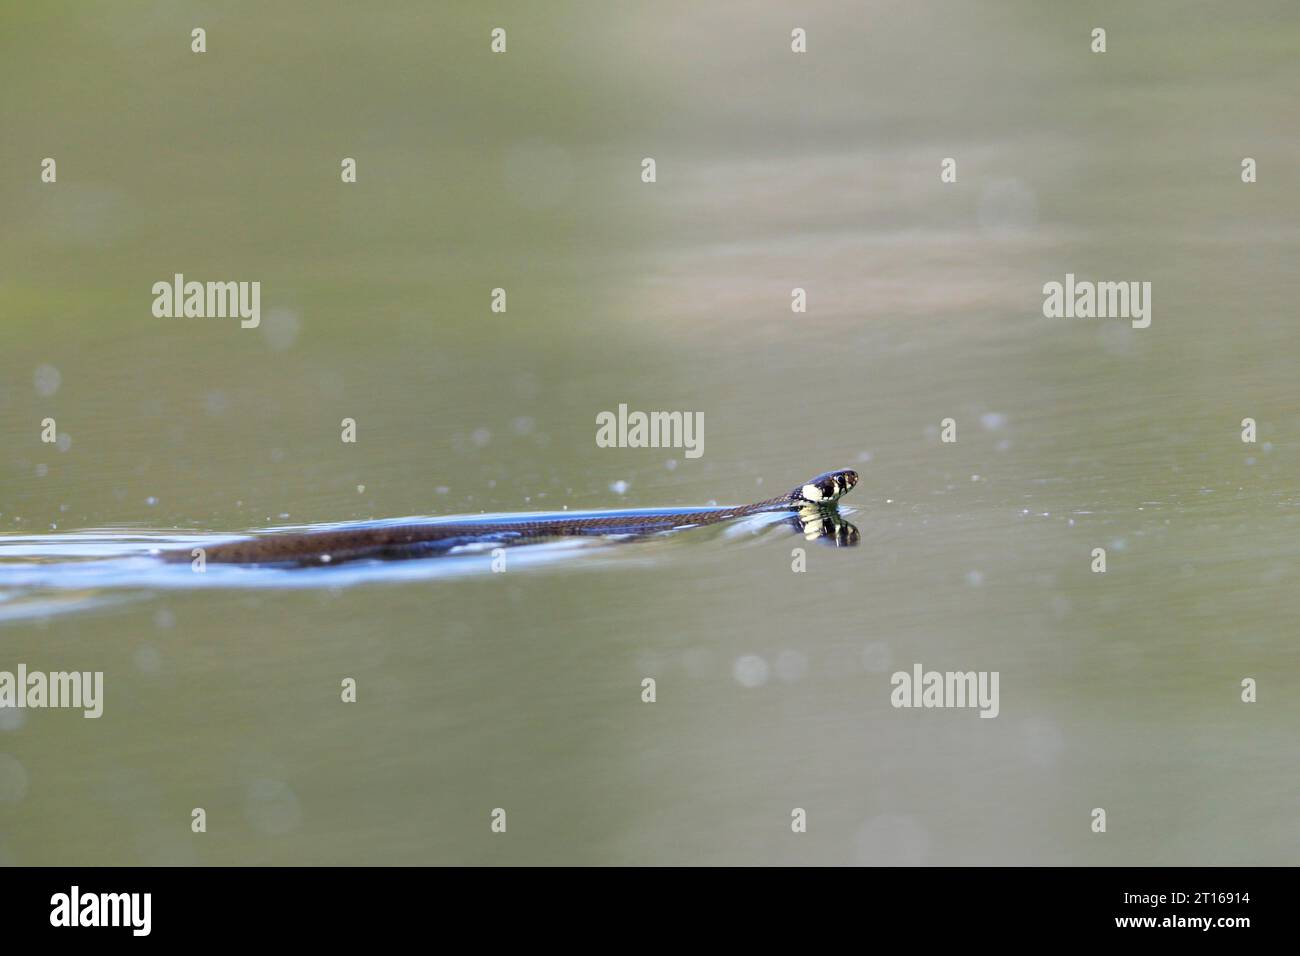 Serpent graminé (Natrix natrix) nageant dans l'eau de la rivière Peene, Naturpark Flusslandschaft Peenetal, Mecklembourg-Poméranie occidentale, Allemagne Banque D'Images